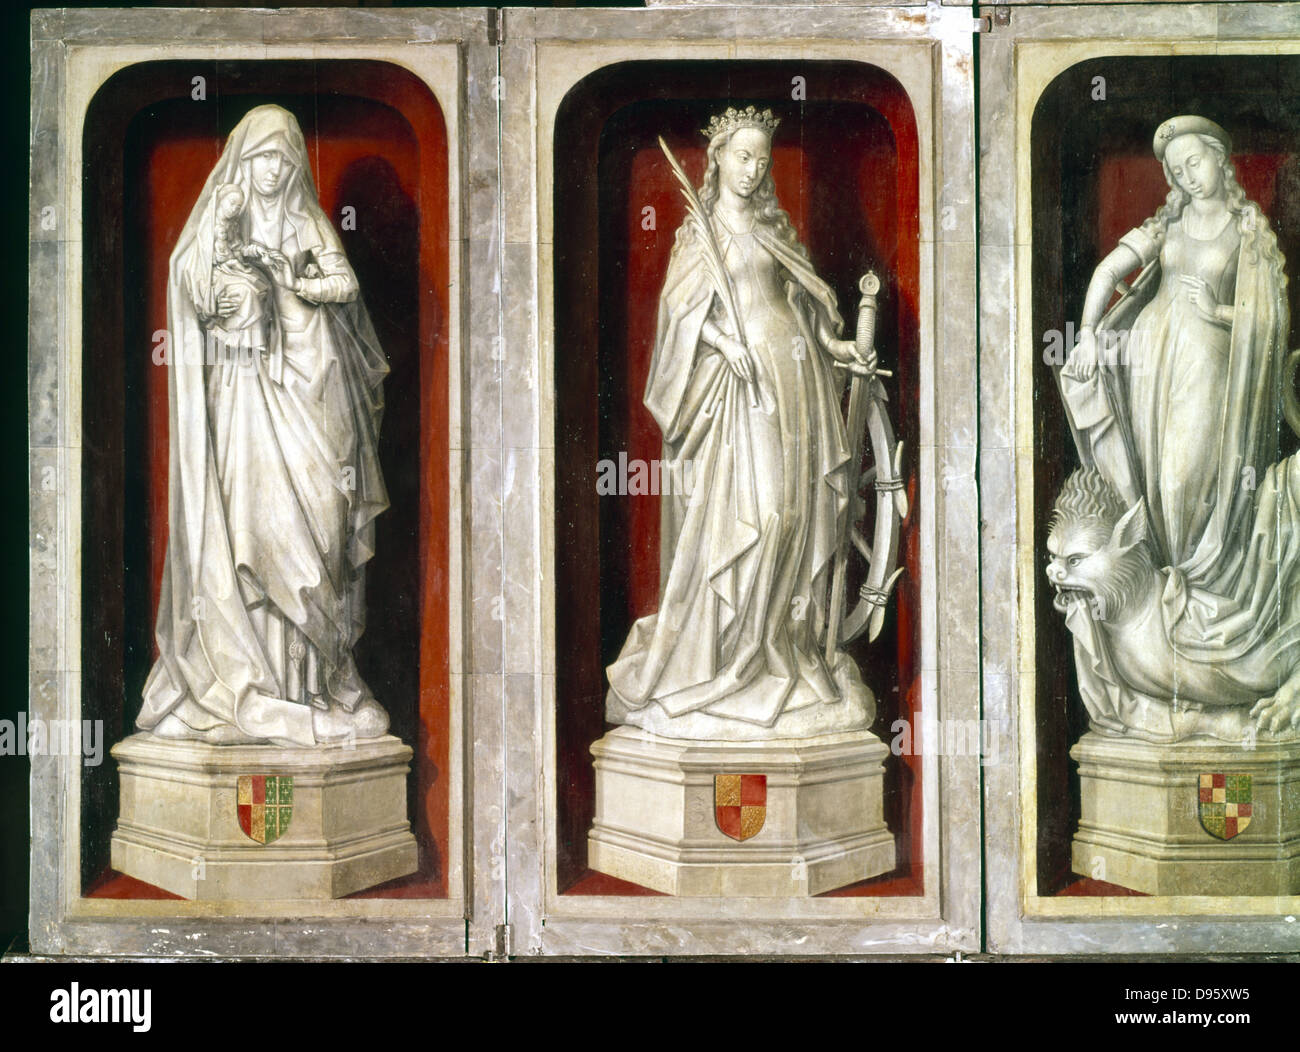 La St Anne tenendo la figlia vergine Maria, Santa Caterina di Alessandria (d307) e St Margaret in piedi sul Diavolo chi visita al carcere. Il marmo. Scuola di francese del XV secolo. Foto Stock